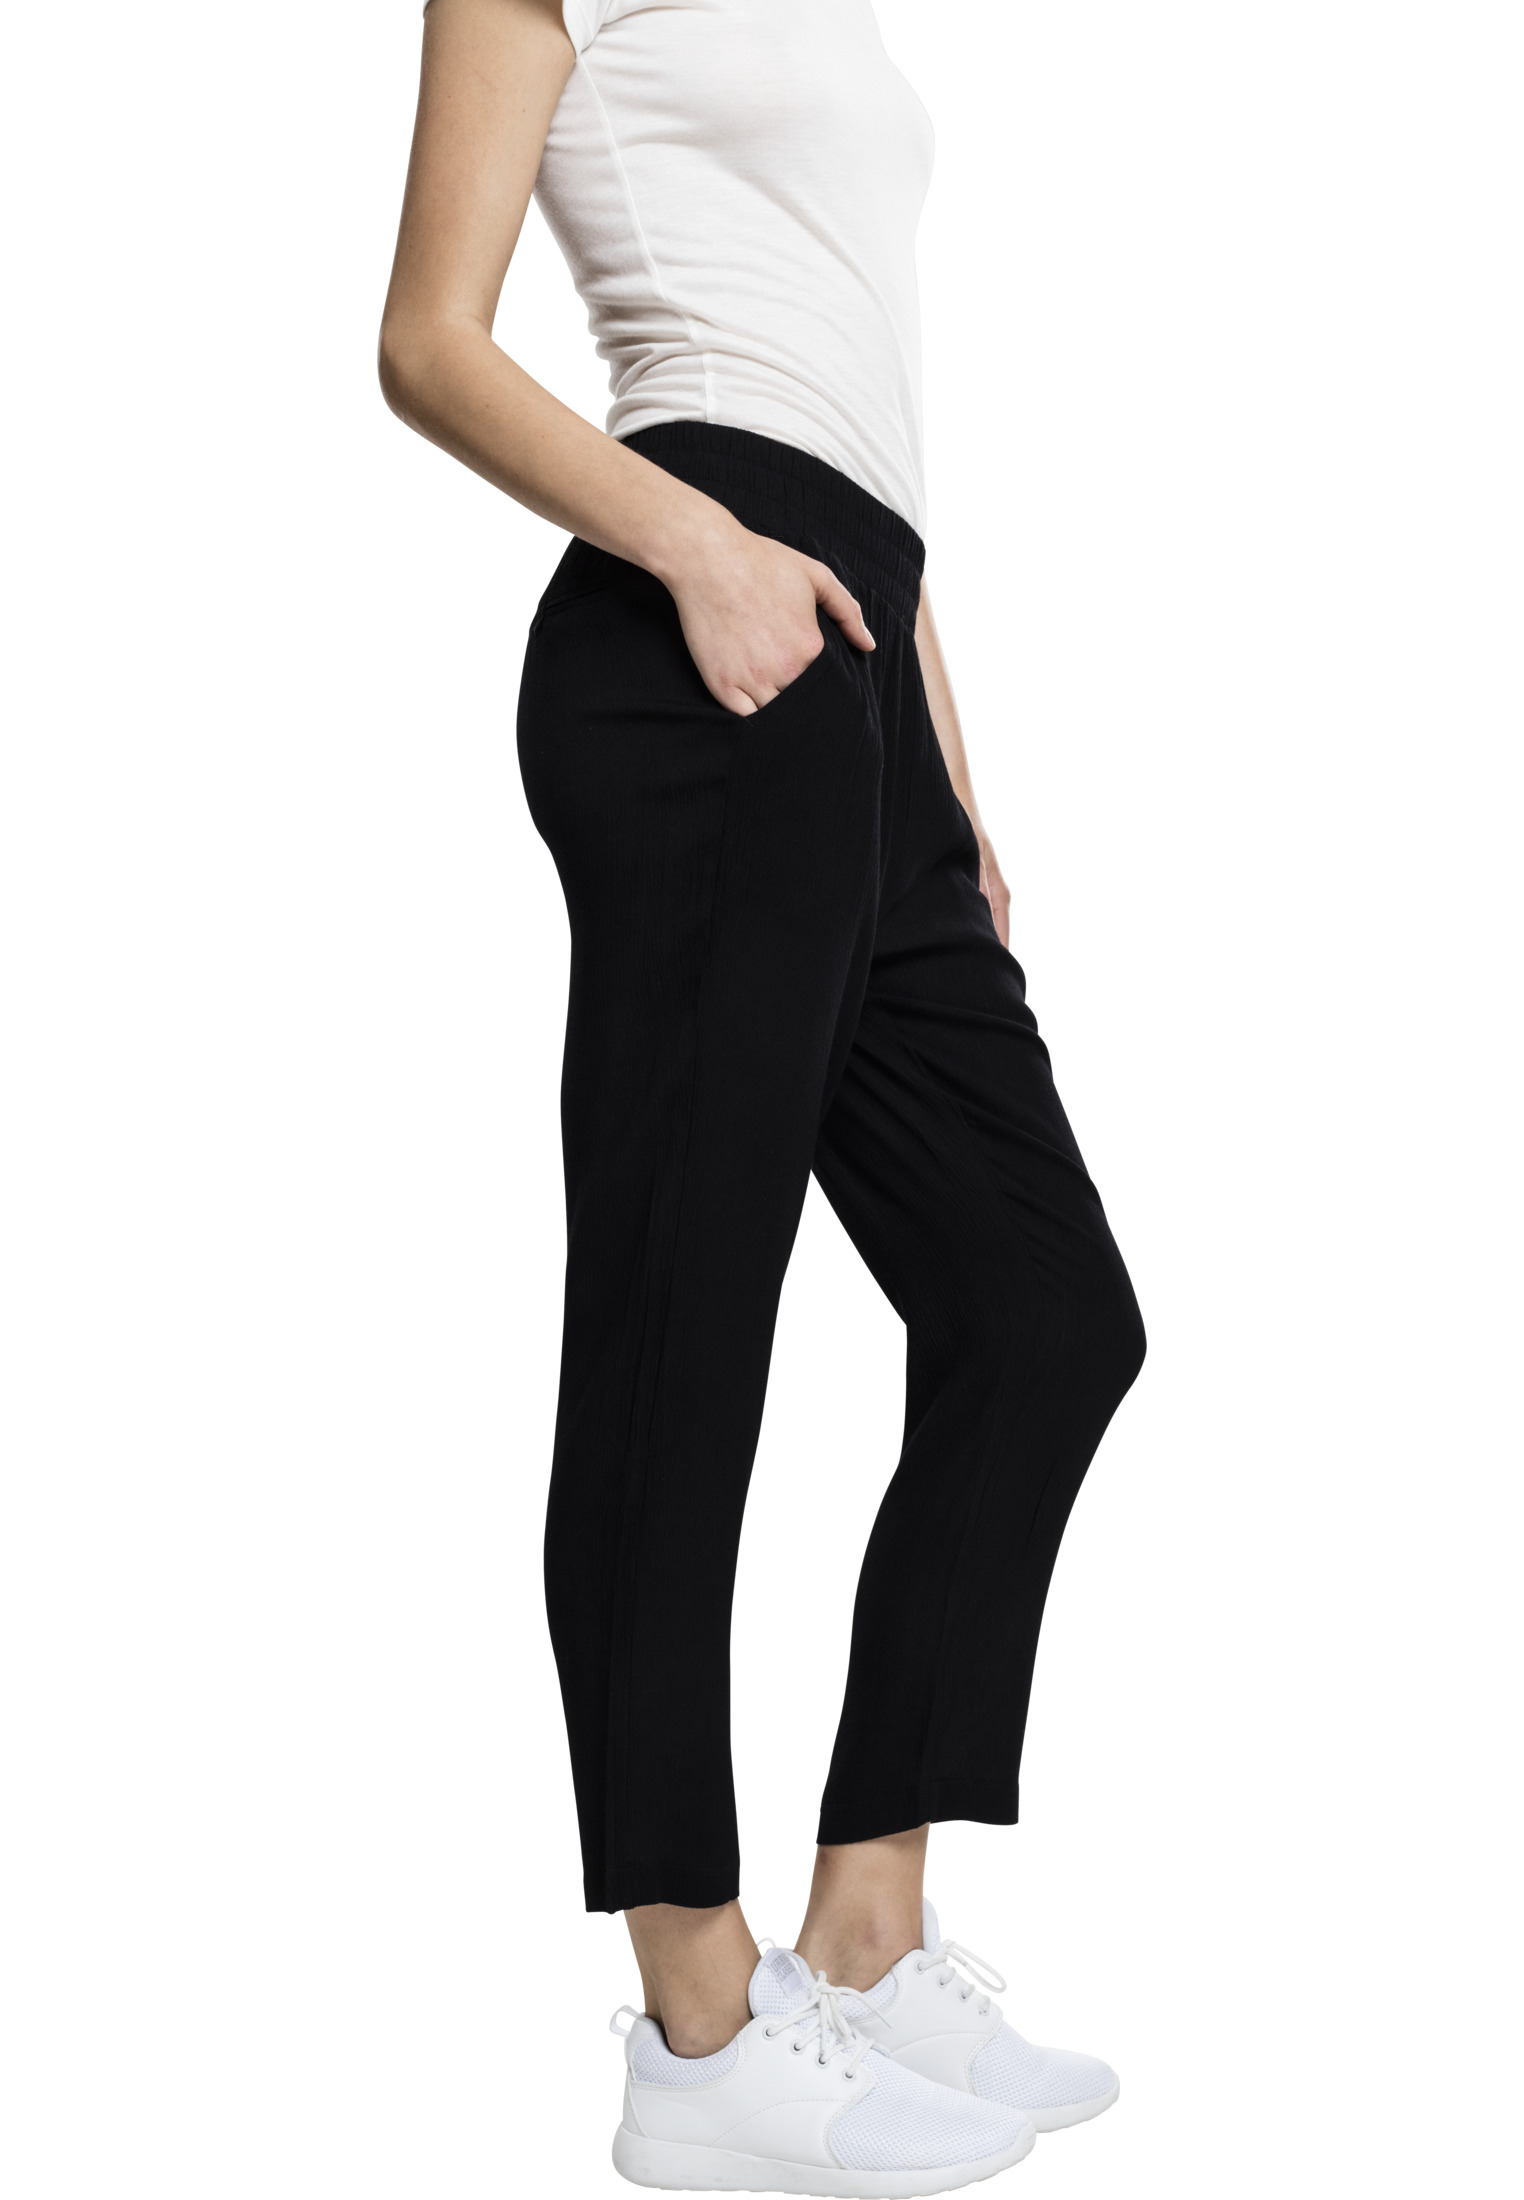 Hosen Ladies Beach Pants in Farbe black